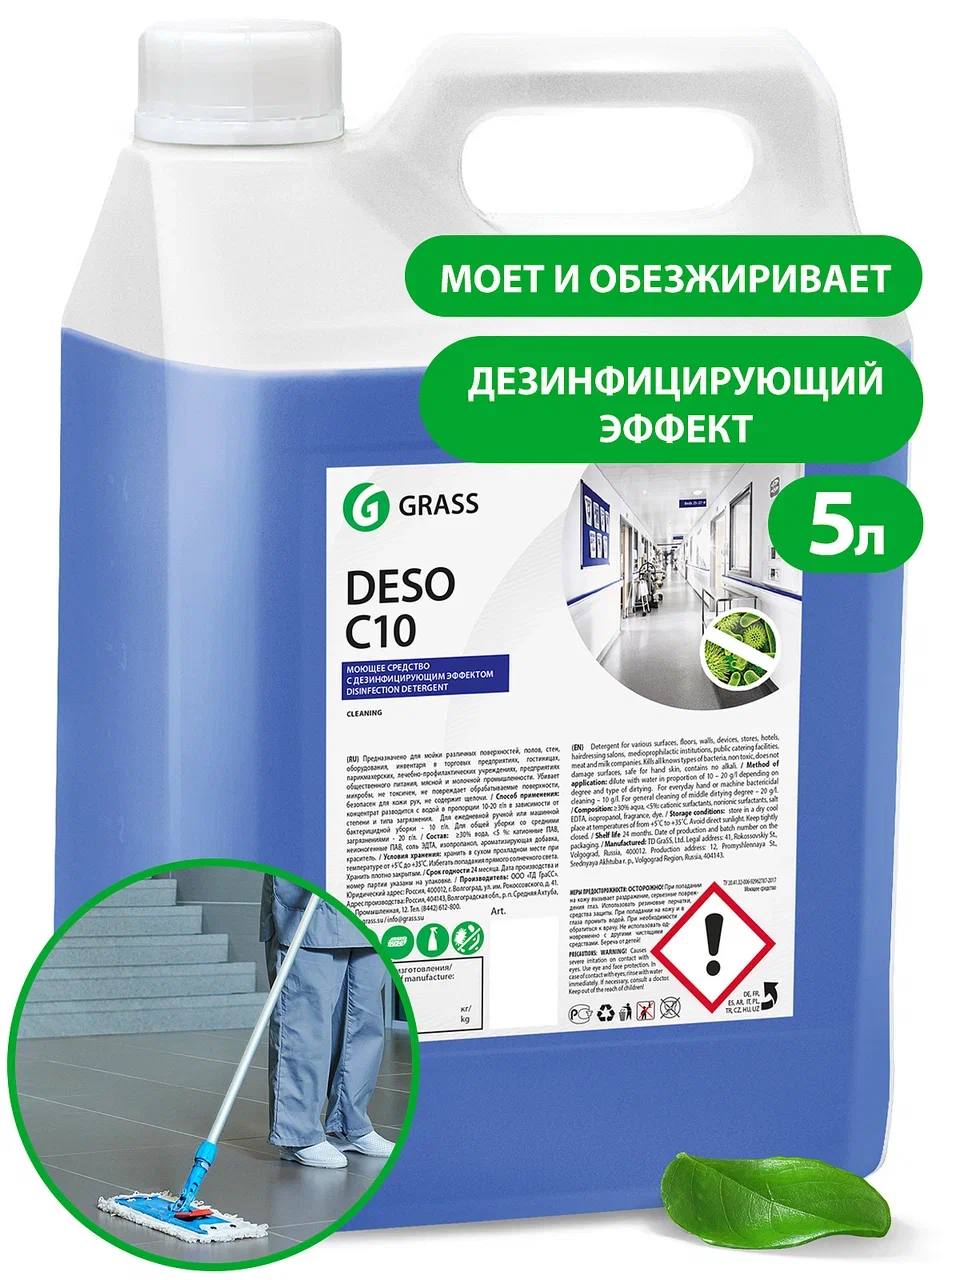 Средство для чистки и дезинфекции «Deso C10», 5 кг